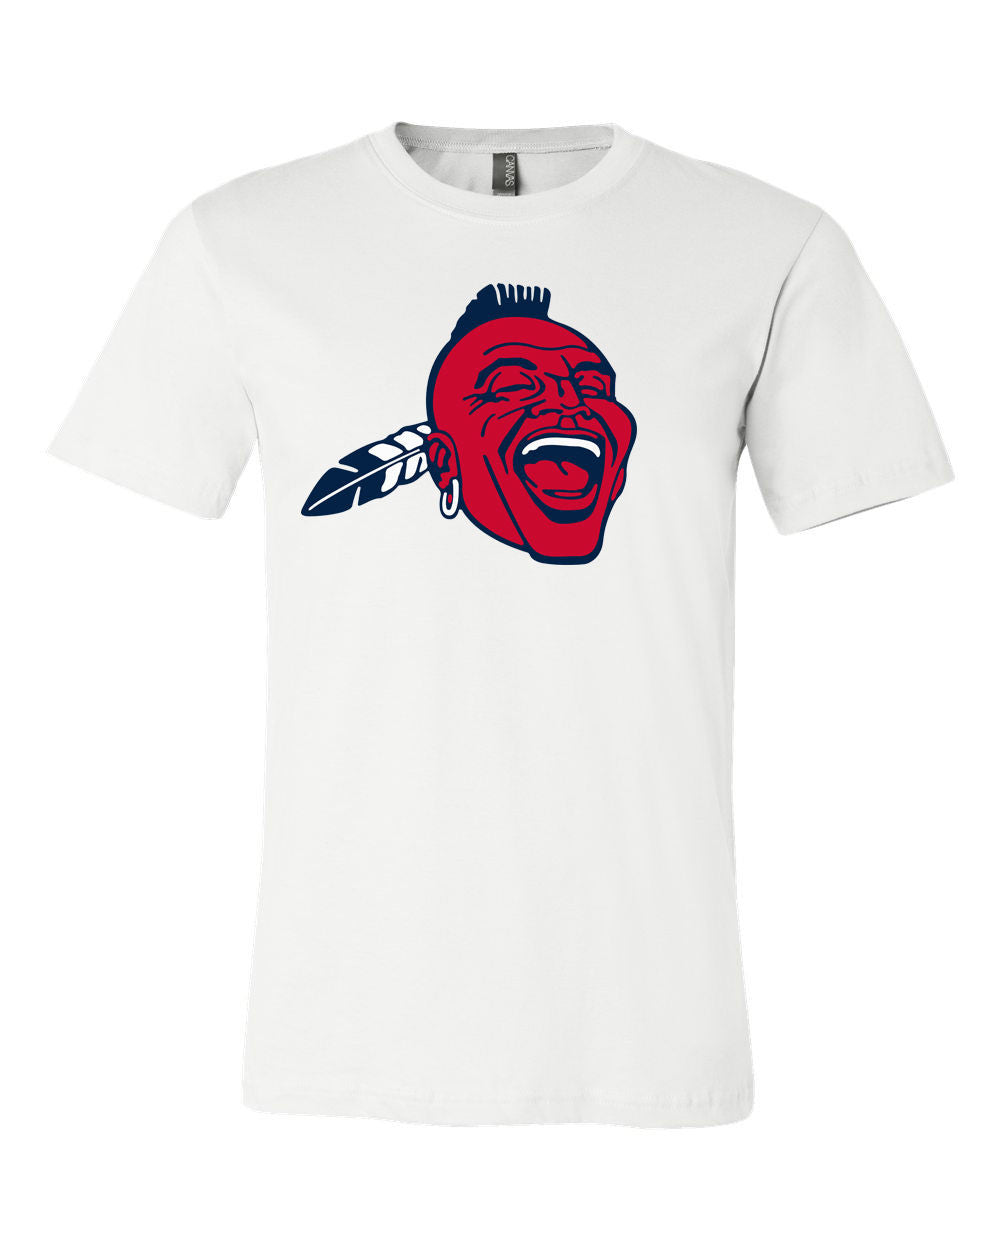 Atlanta Braves Team Shirt jersey shirt